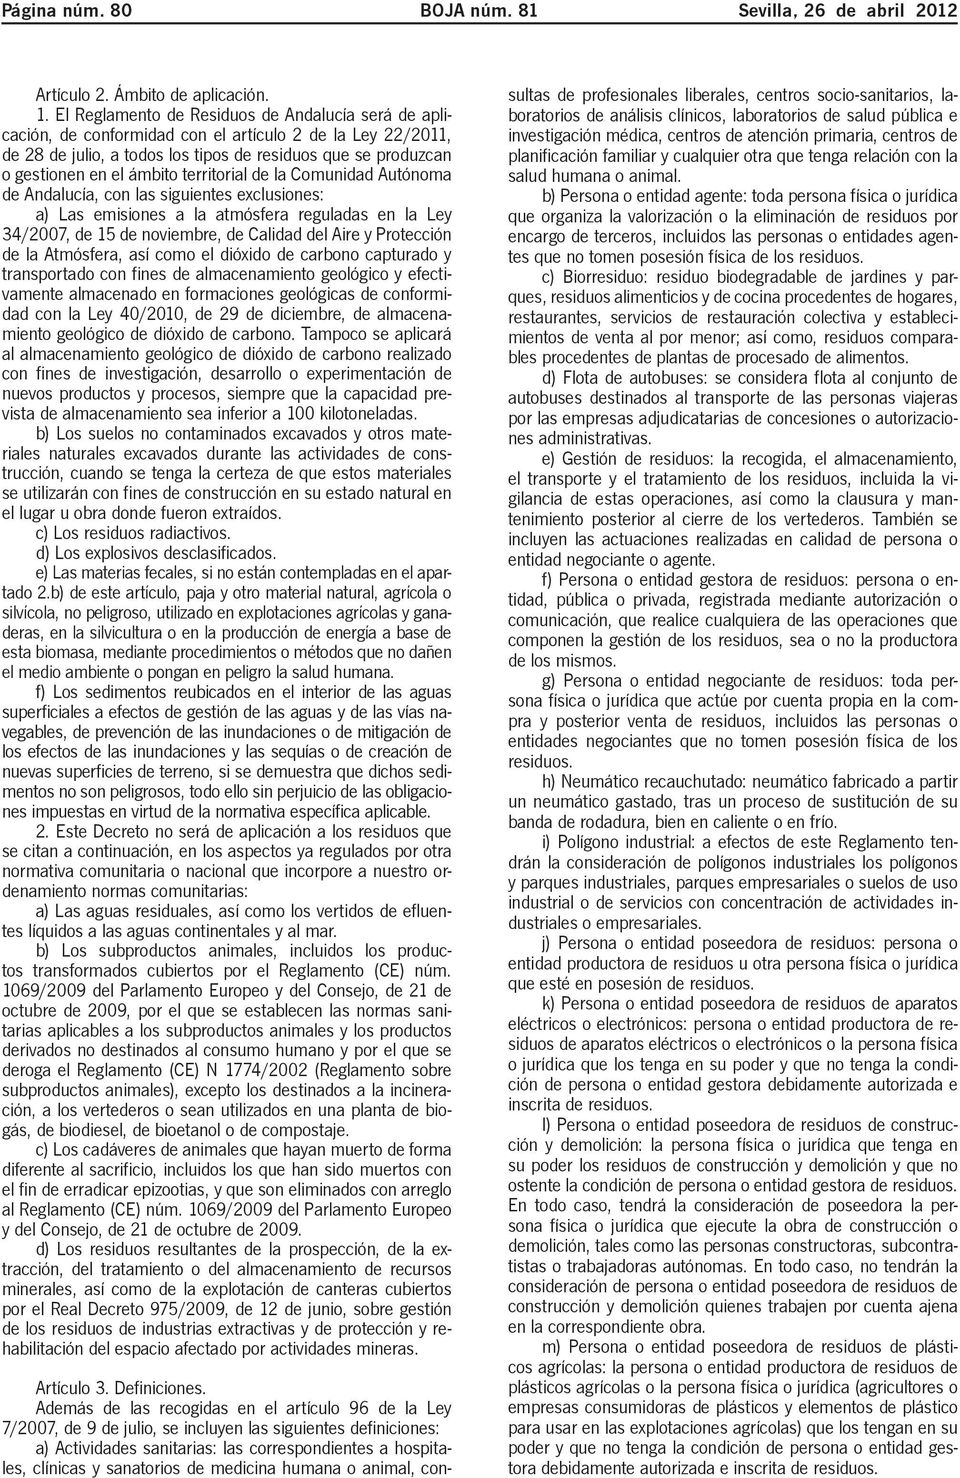 territorial de la Comunidad Autónoma de Andalucía, con las siguientes exclusiones: a) Las emisiones a la atmósfera reguladas en la Ley 34/2007, de 15 de noviembre, de Calidad del Aire y Protección de